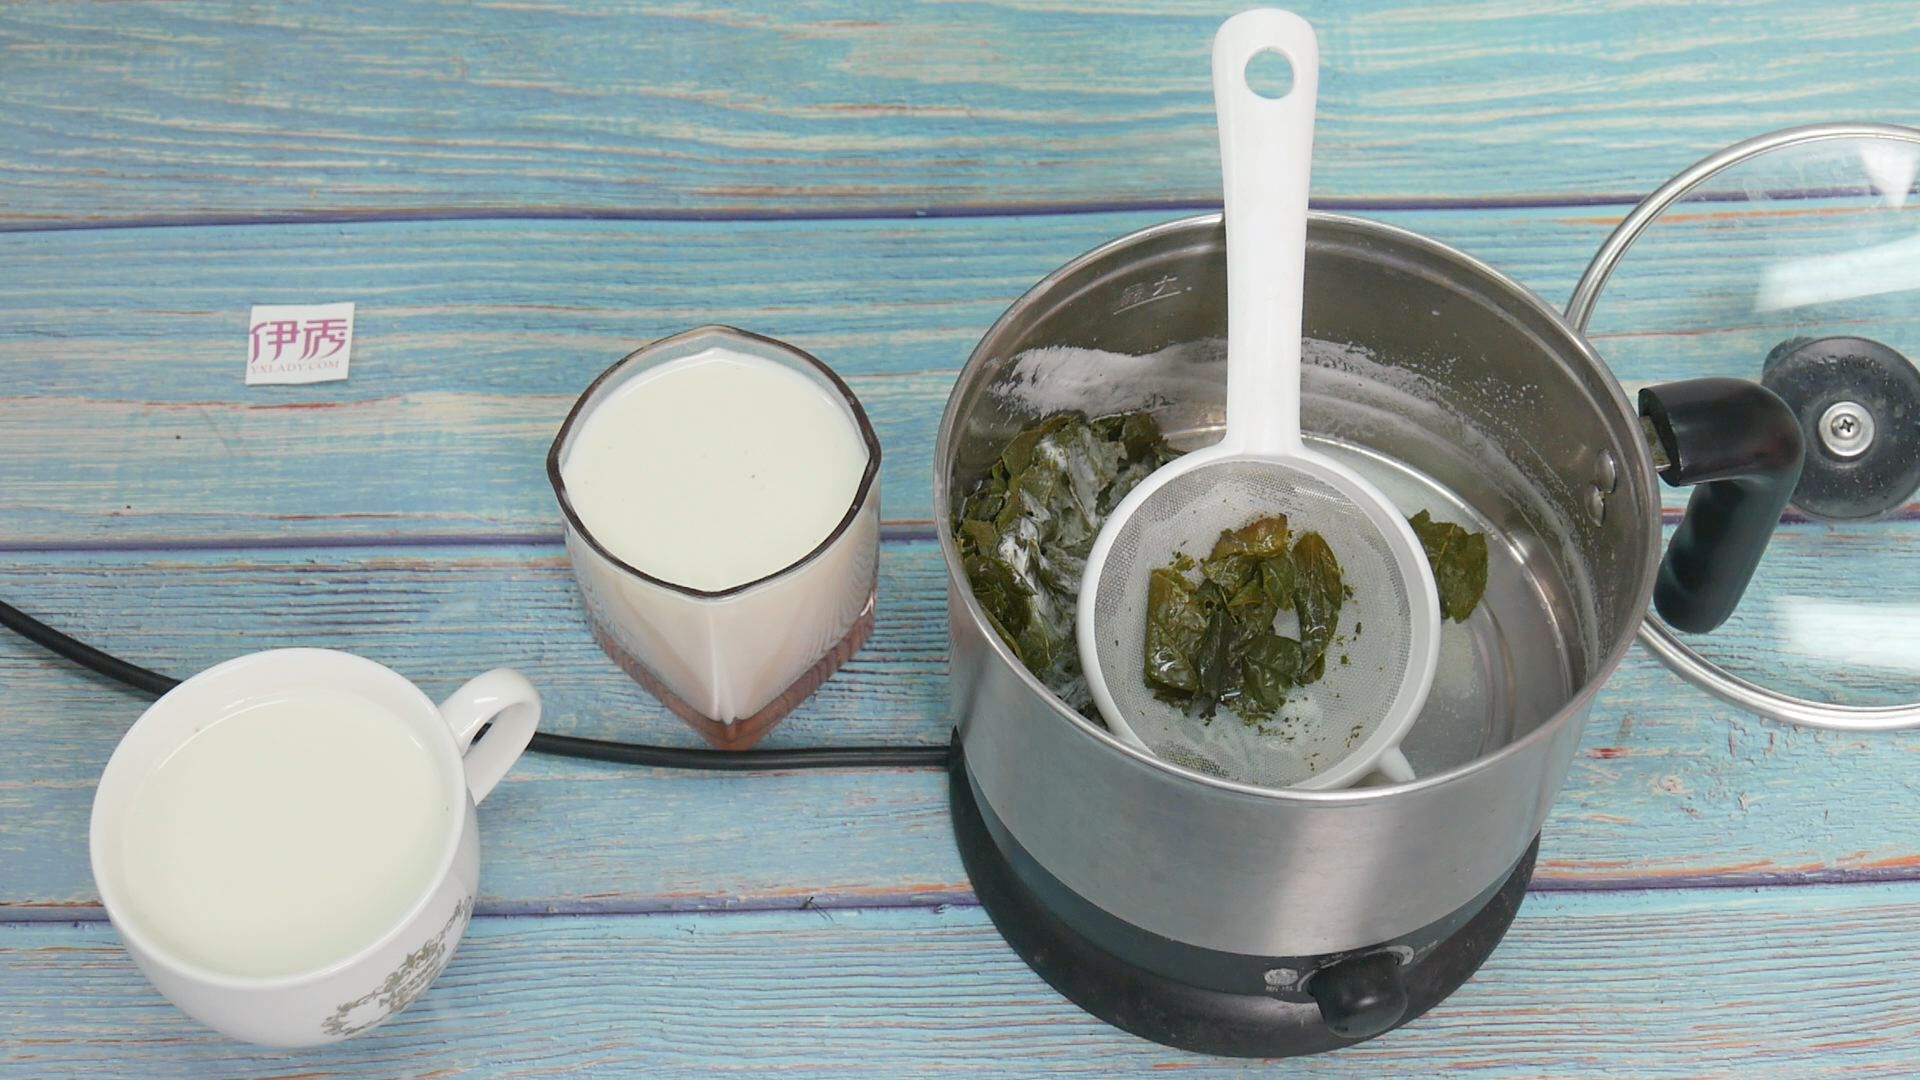 鍋煮奶茶 DIY 四步驟 食譜 - 奶茶控必學